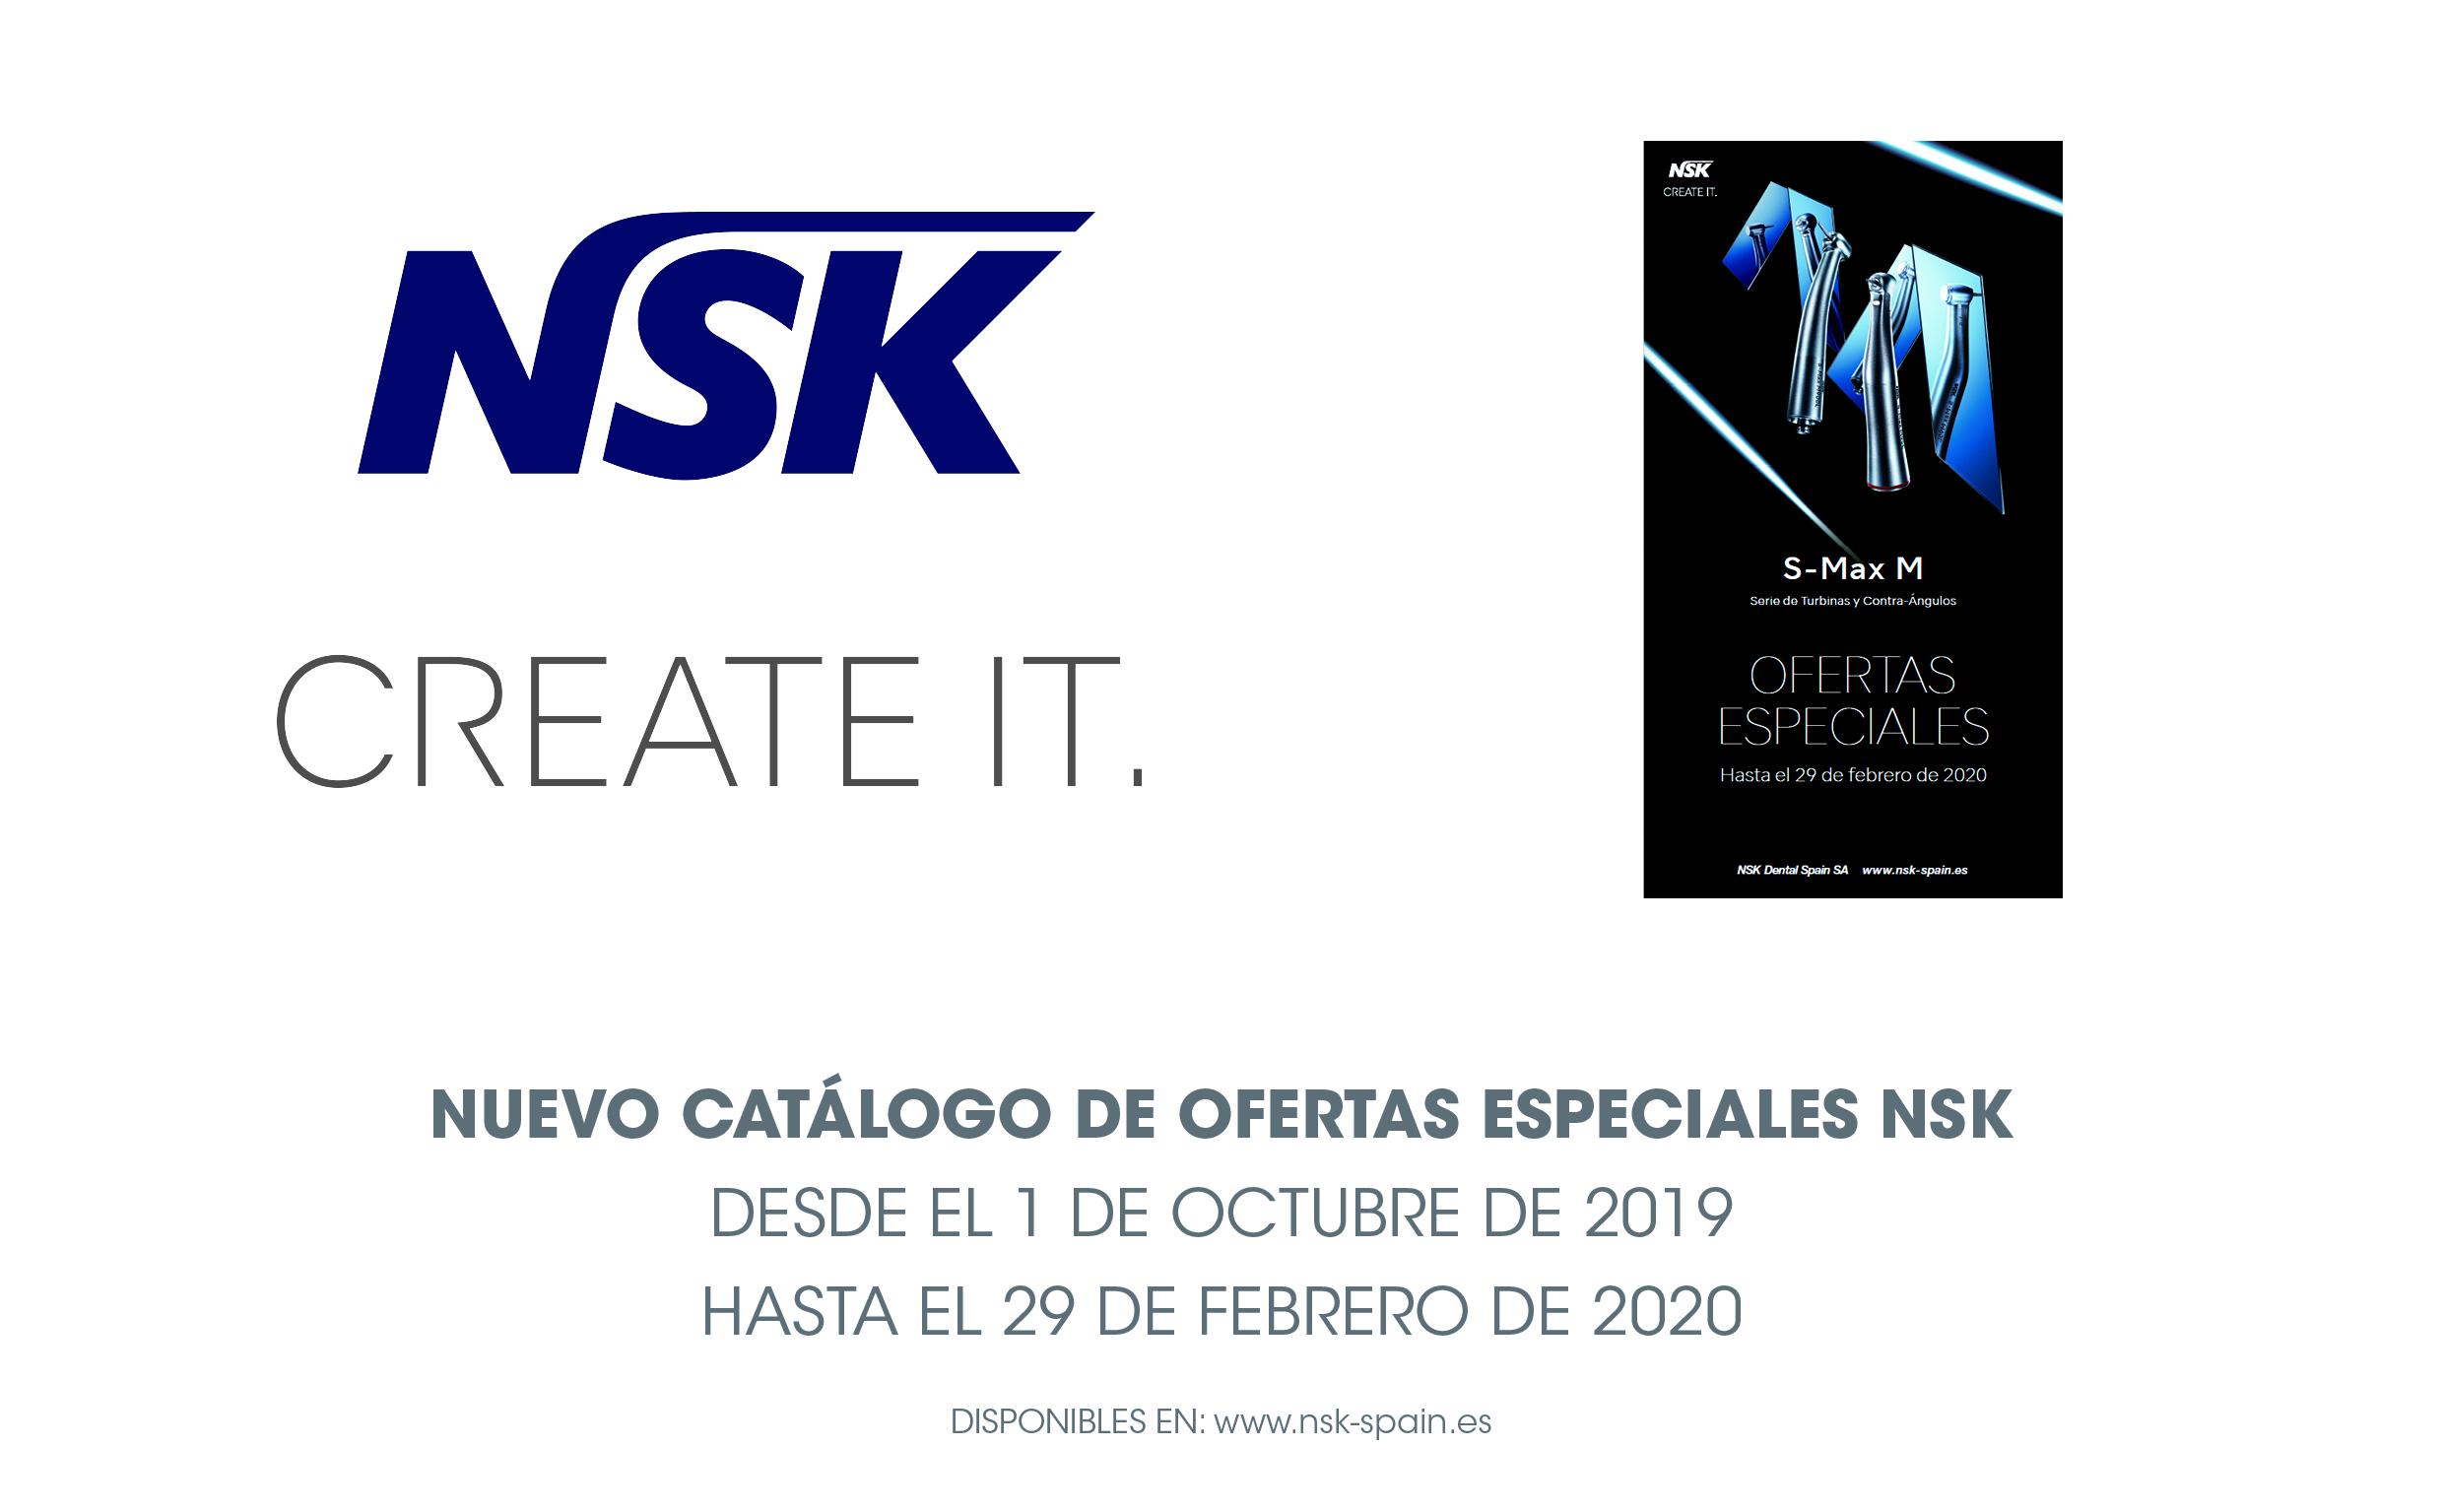 El nuevo catálogo de ofertas especiales de NSK estará disponible hasta el 29 de febrero de 2020. FOTO: NSK